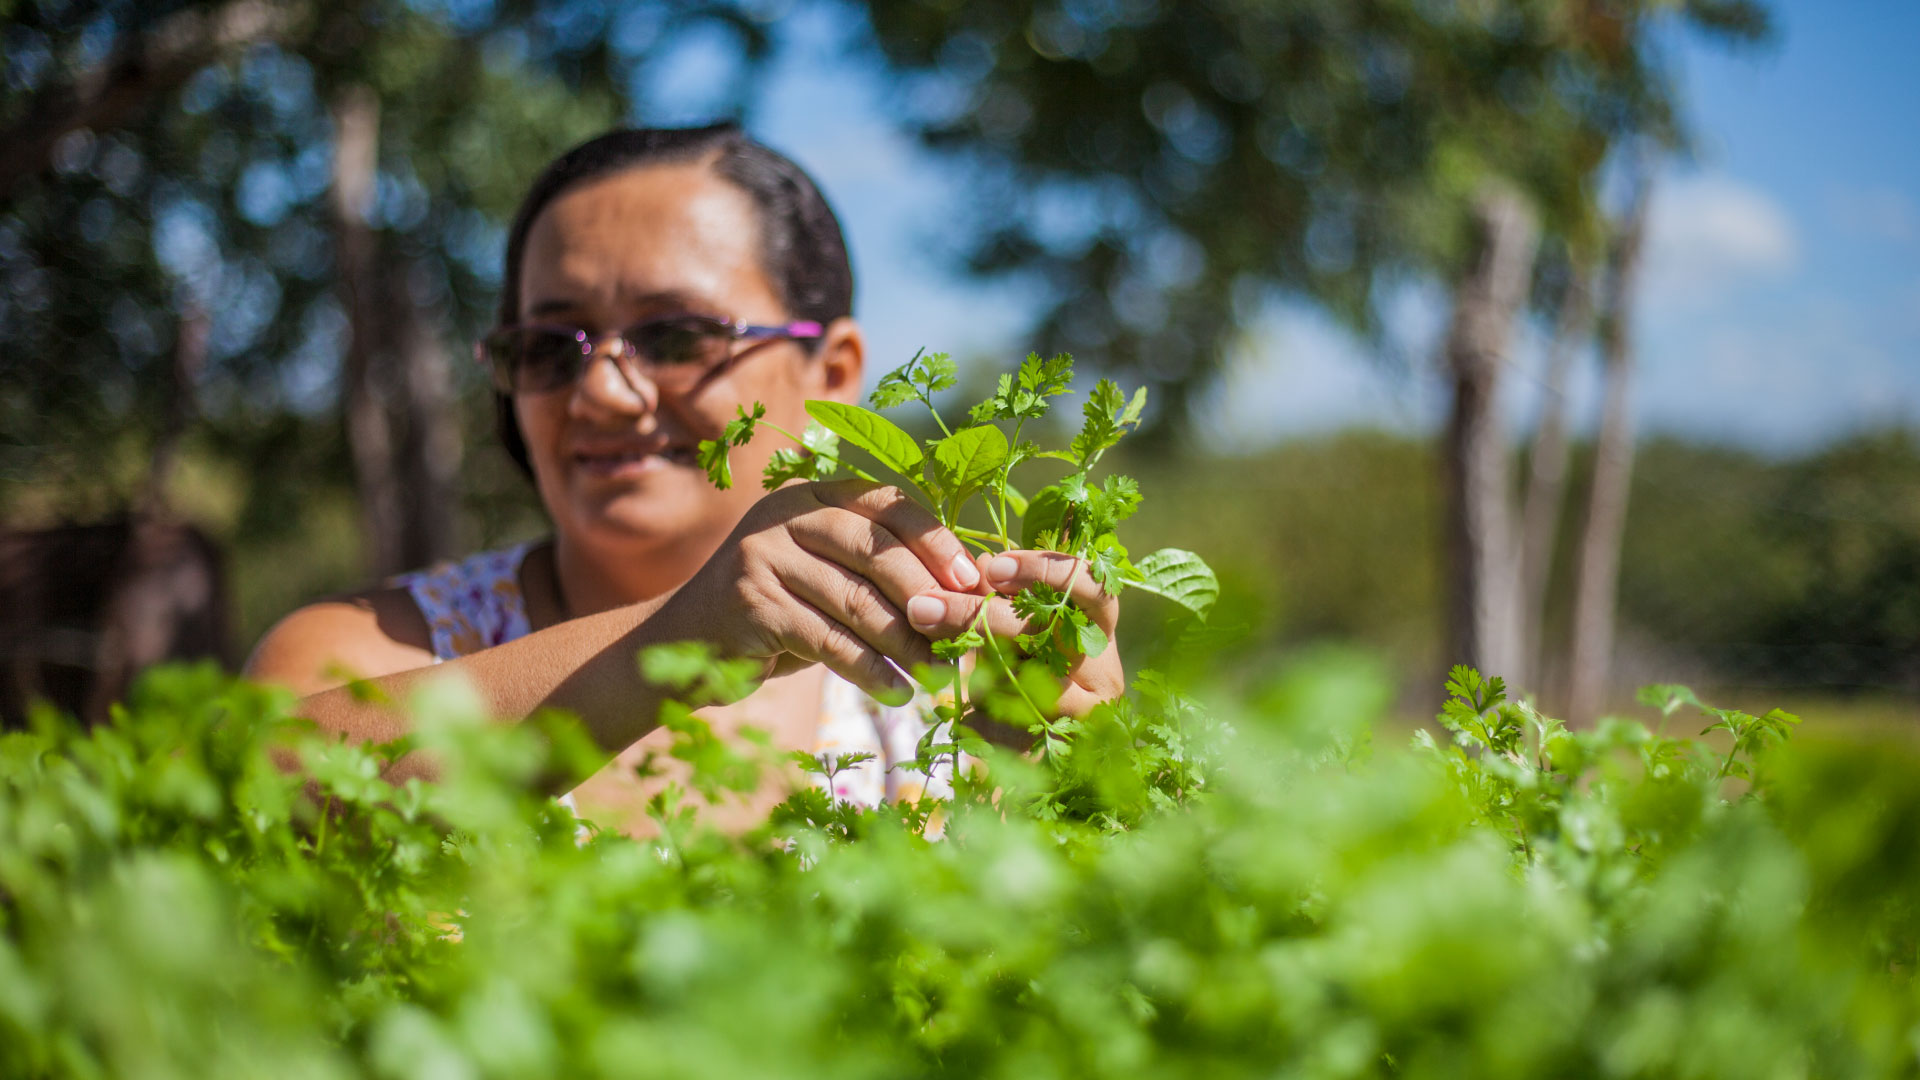 Feira do Espaço Agroecológico Antônio Conselheiro celebra 8 anos de existência em Quixeramobim (CE)